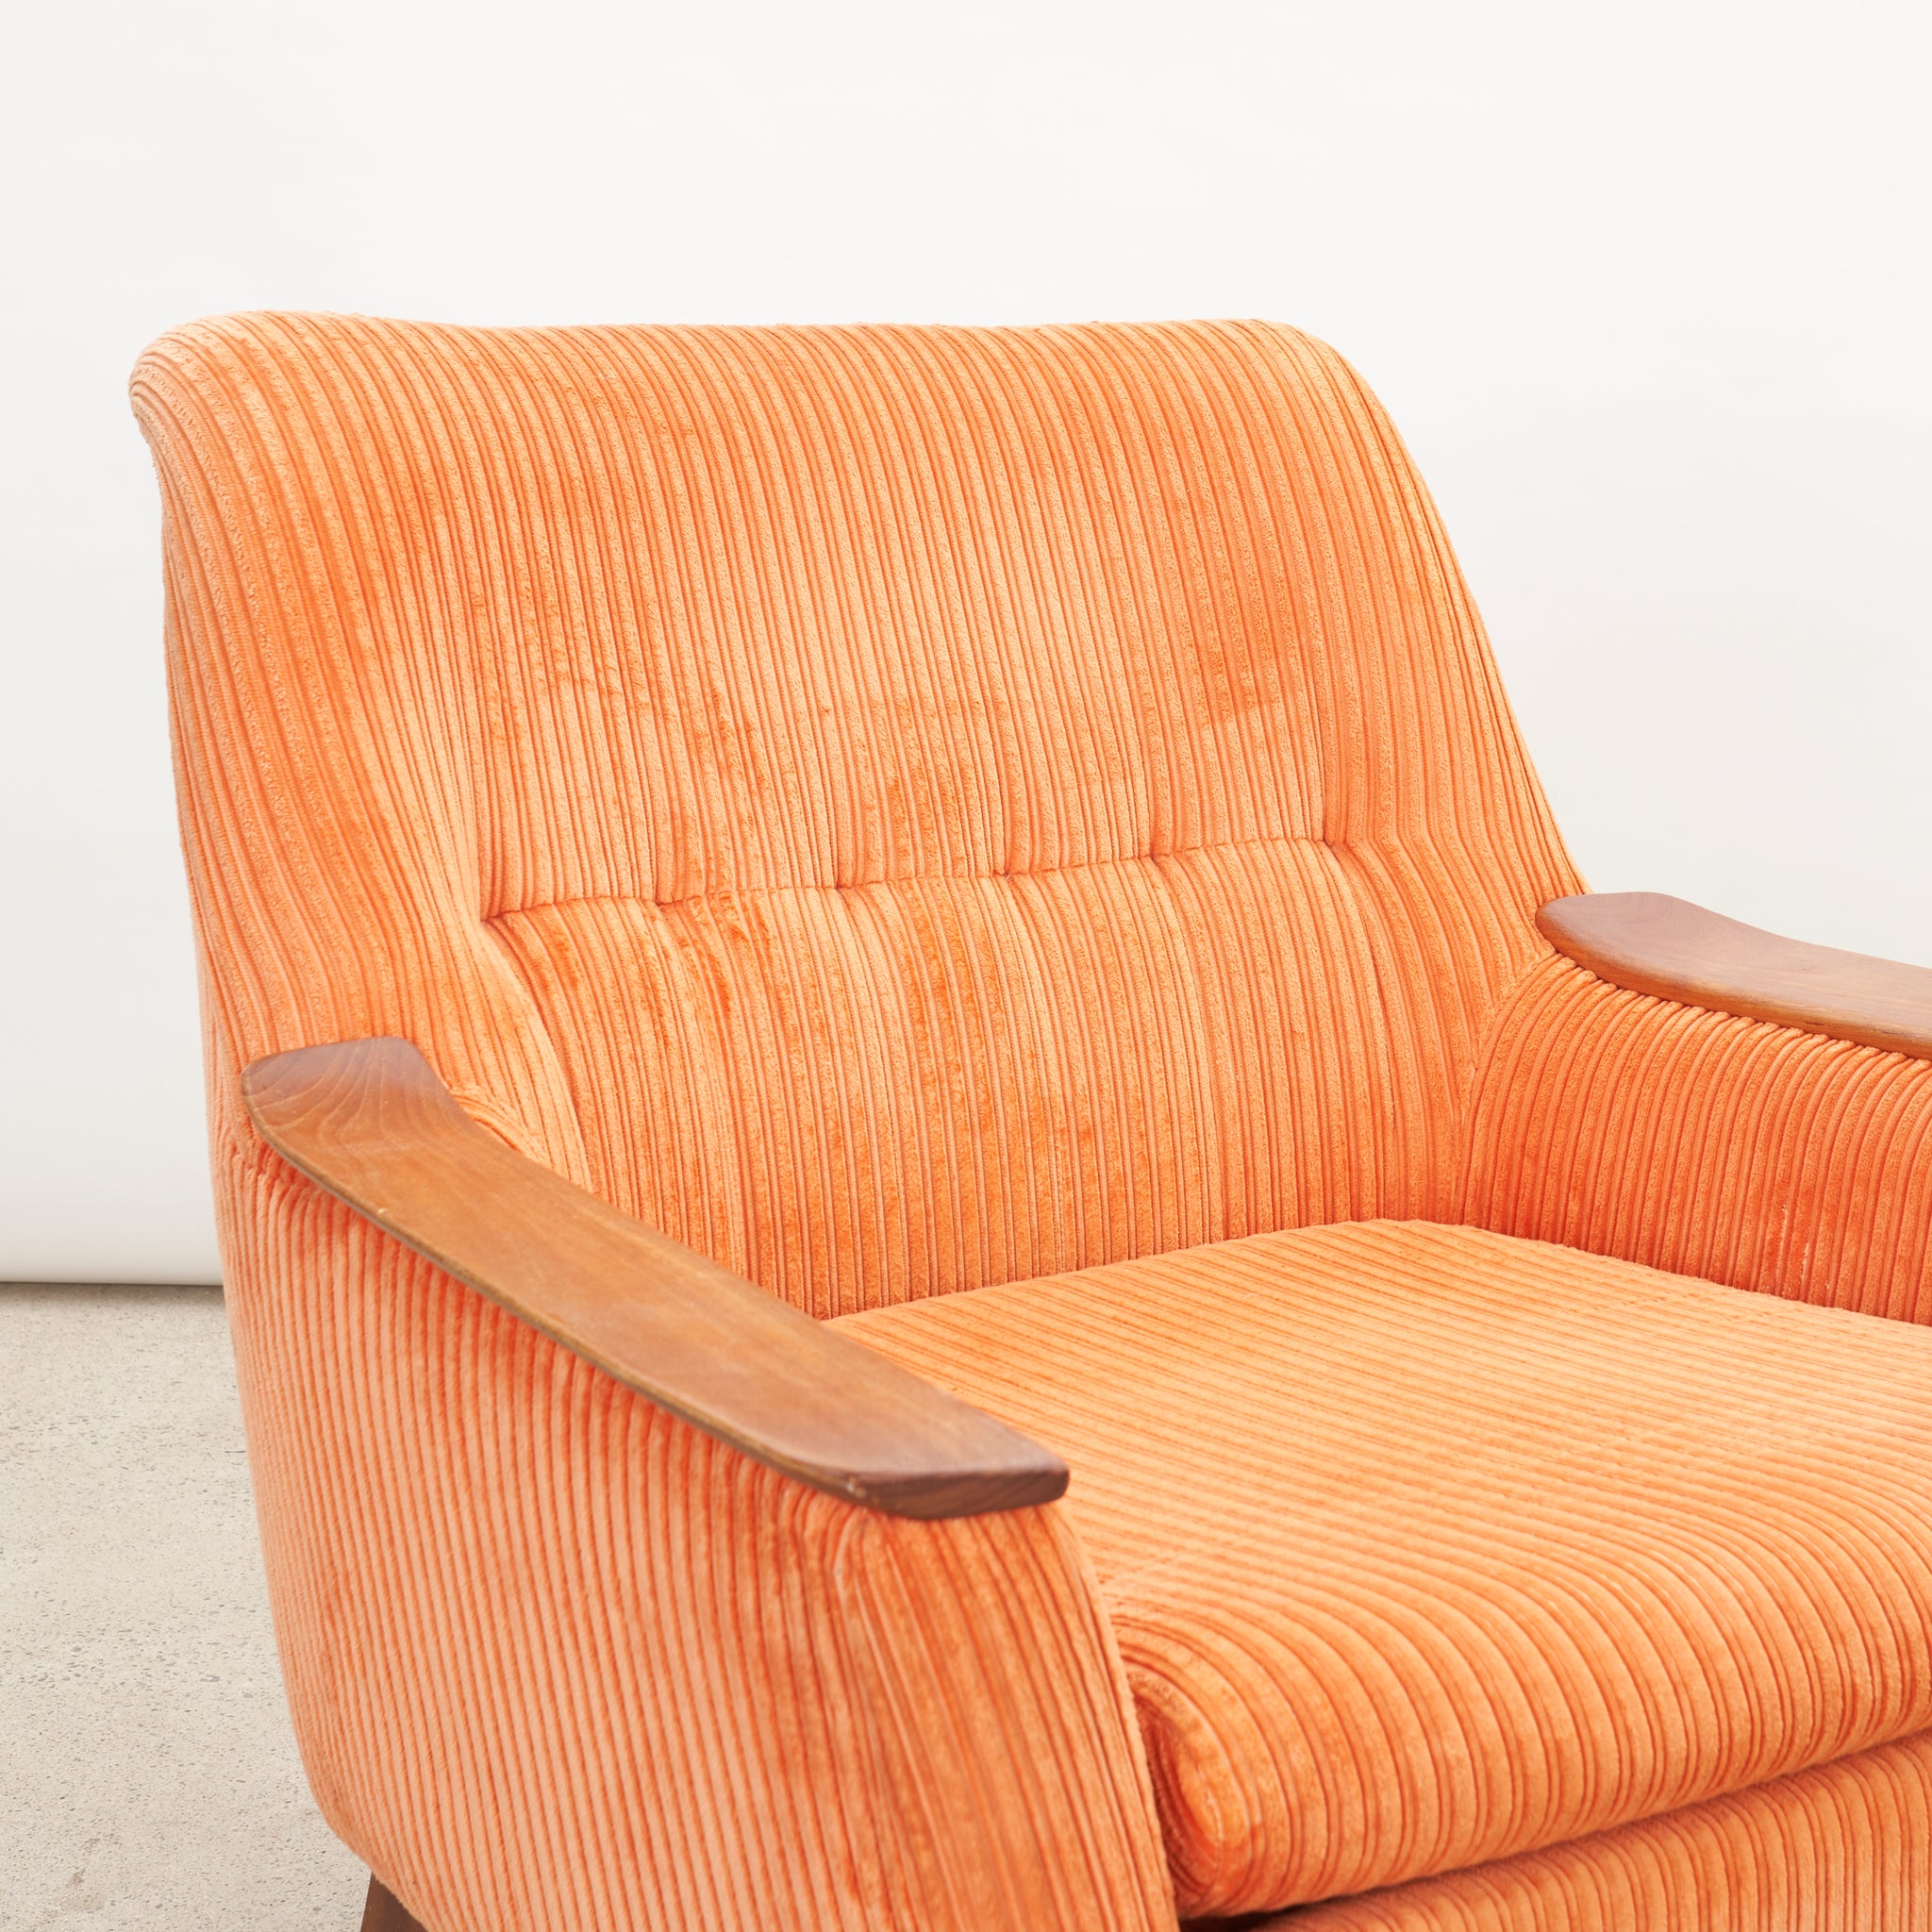 Teak Frame Upholstered Lounge Chair